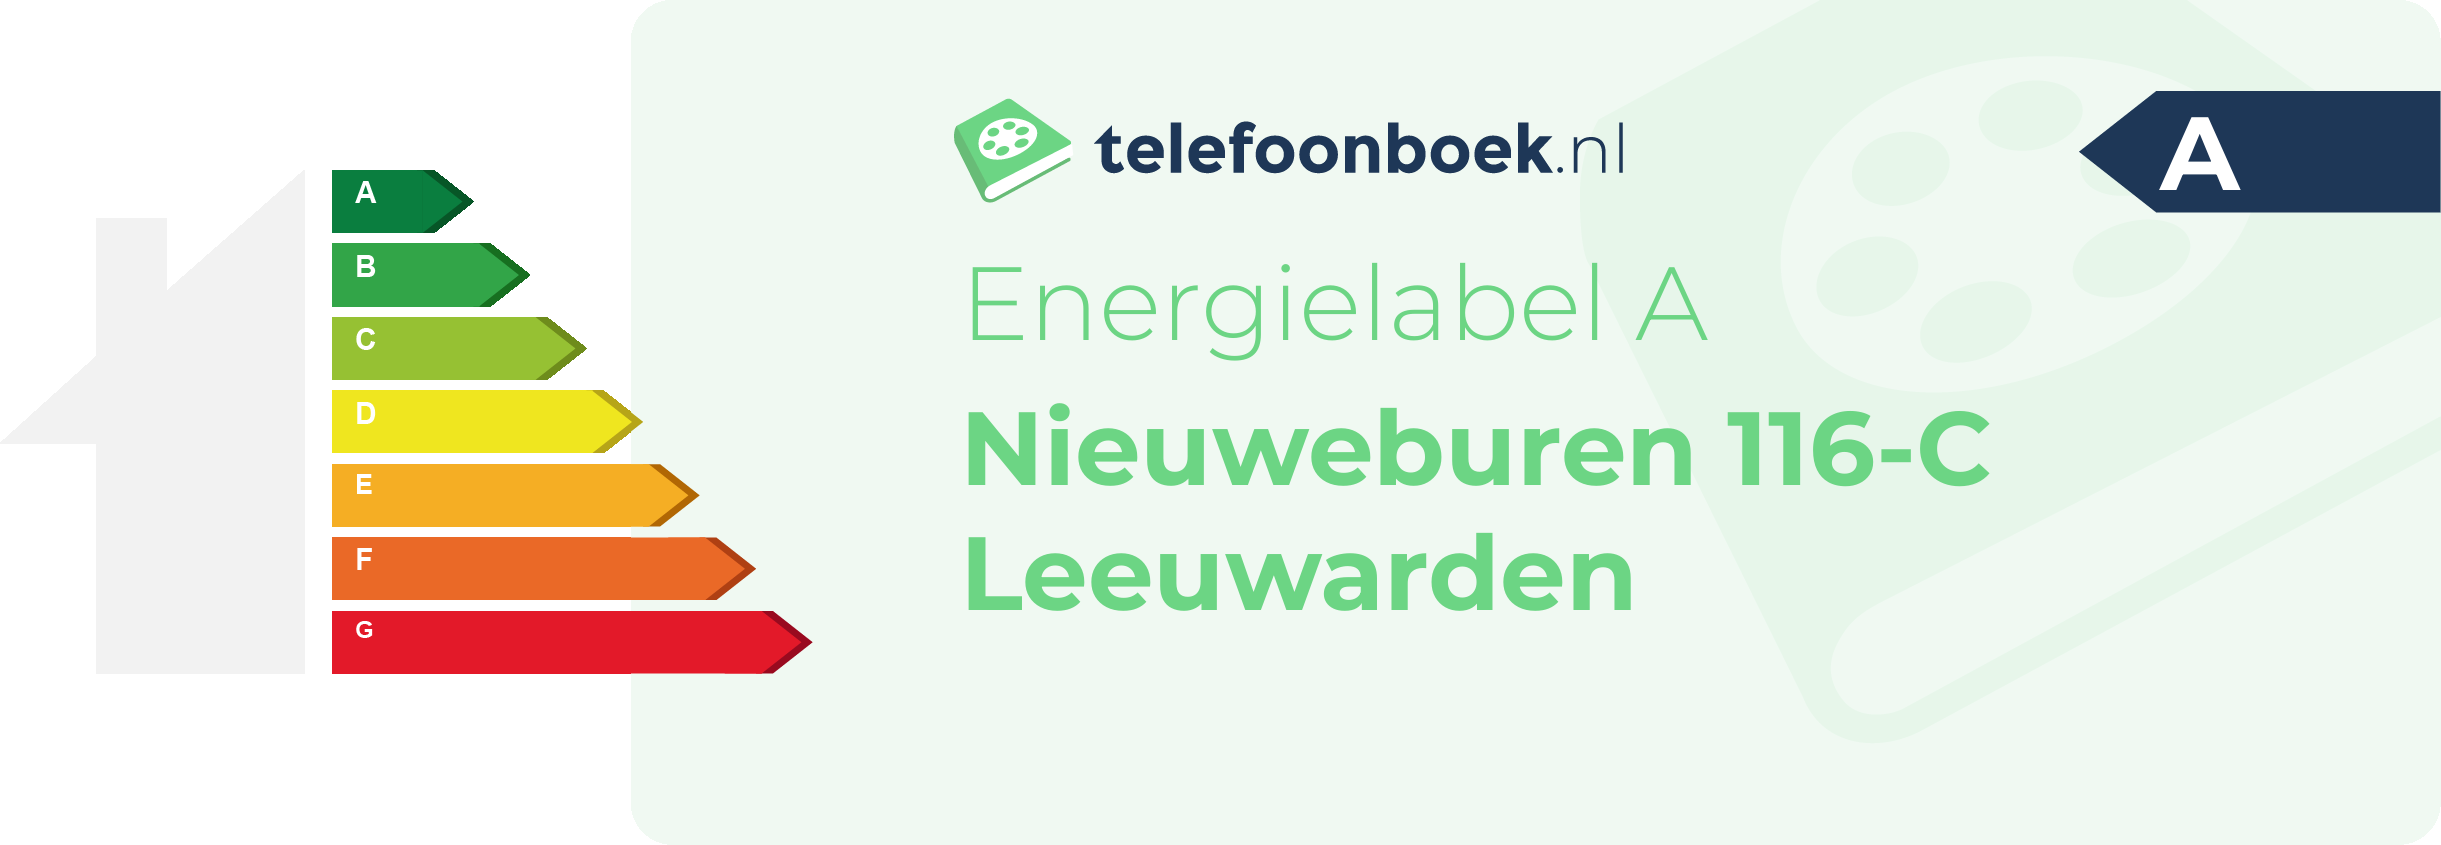 Energielabel Nieuweburen 116-C Leeuwarden